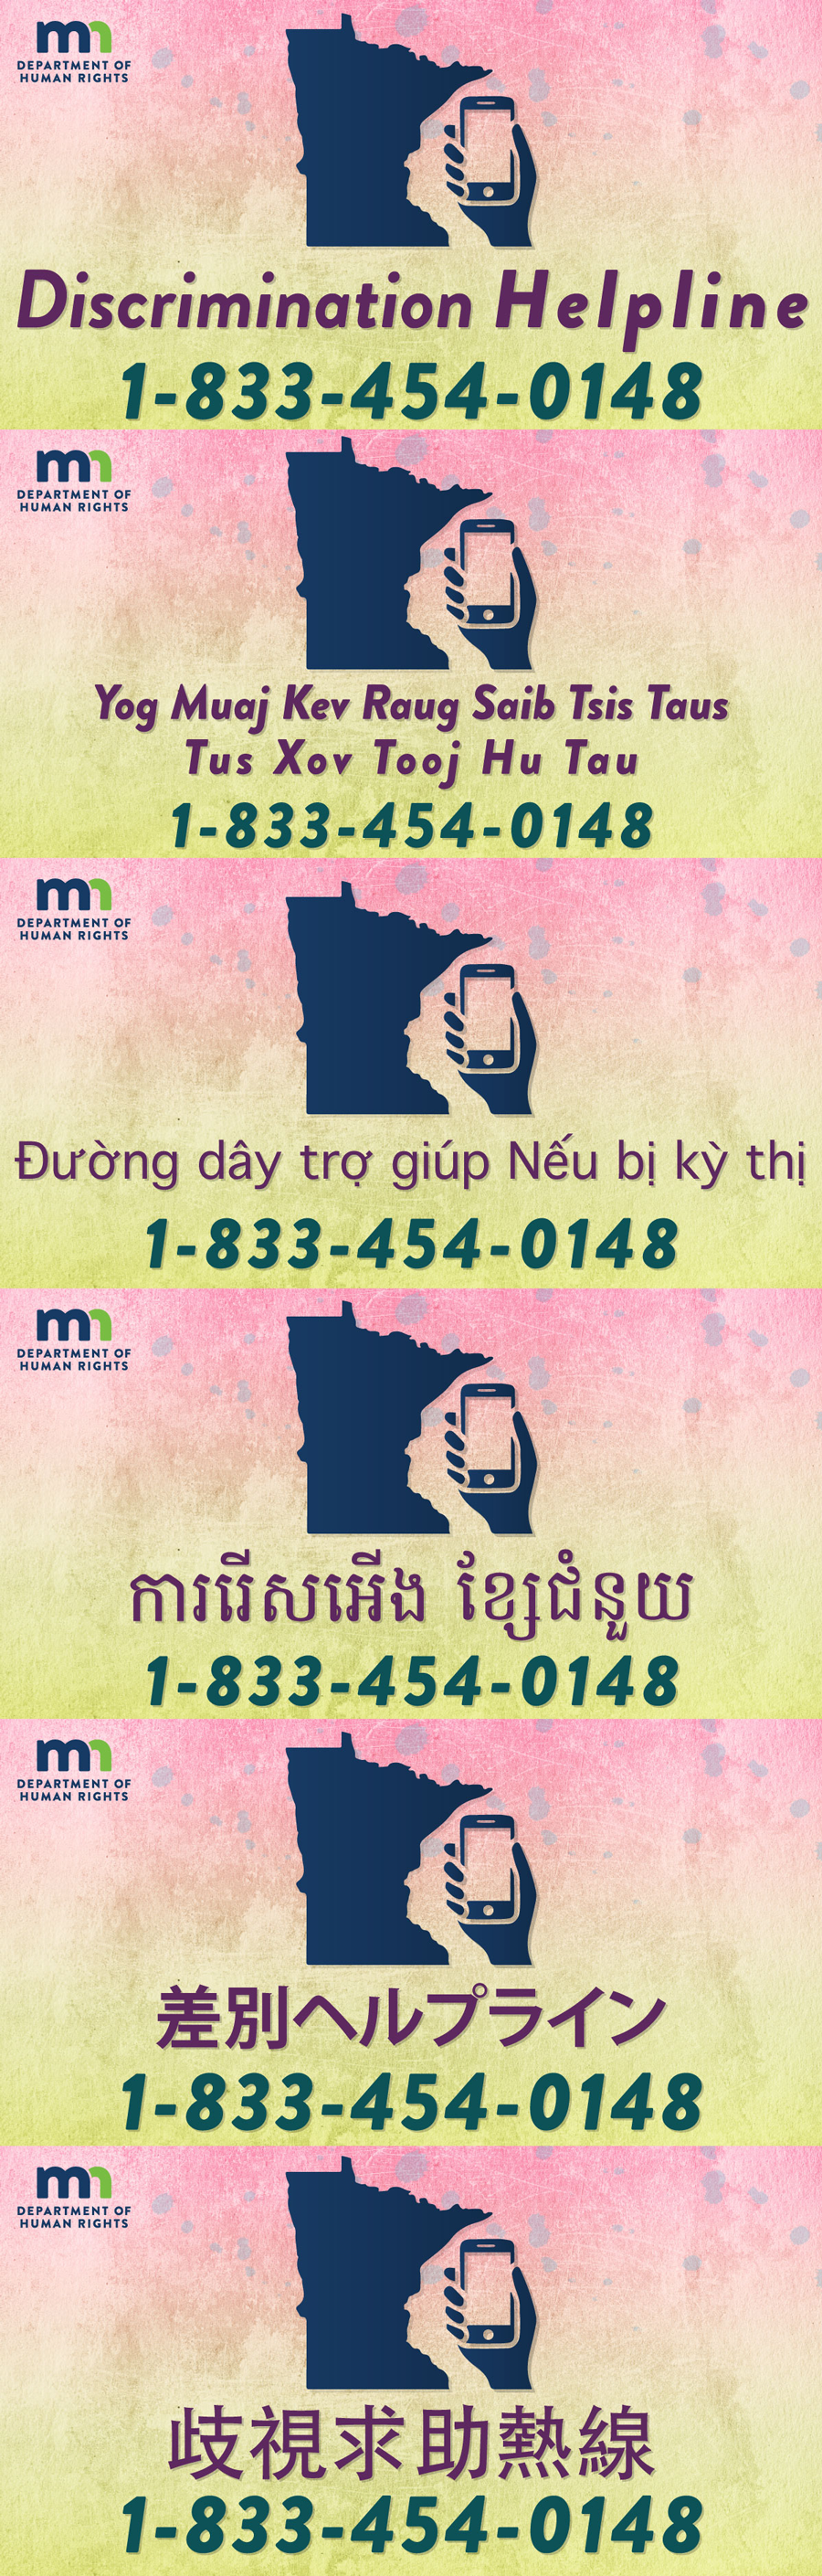 Minnesota discrimination hotline: 1-833-454-0148